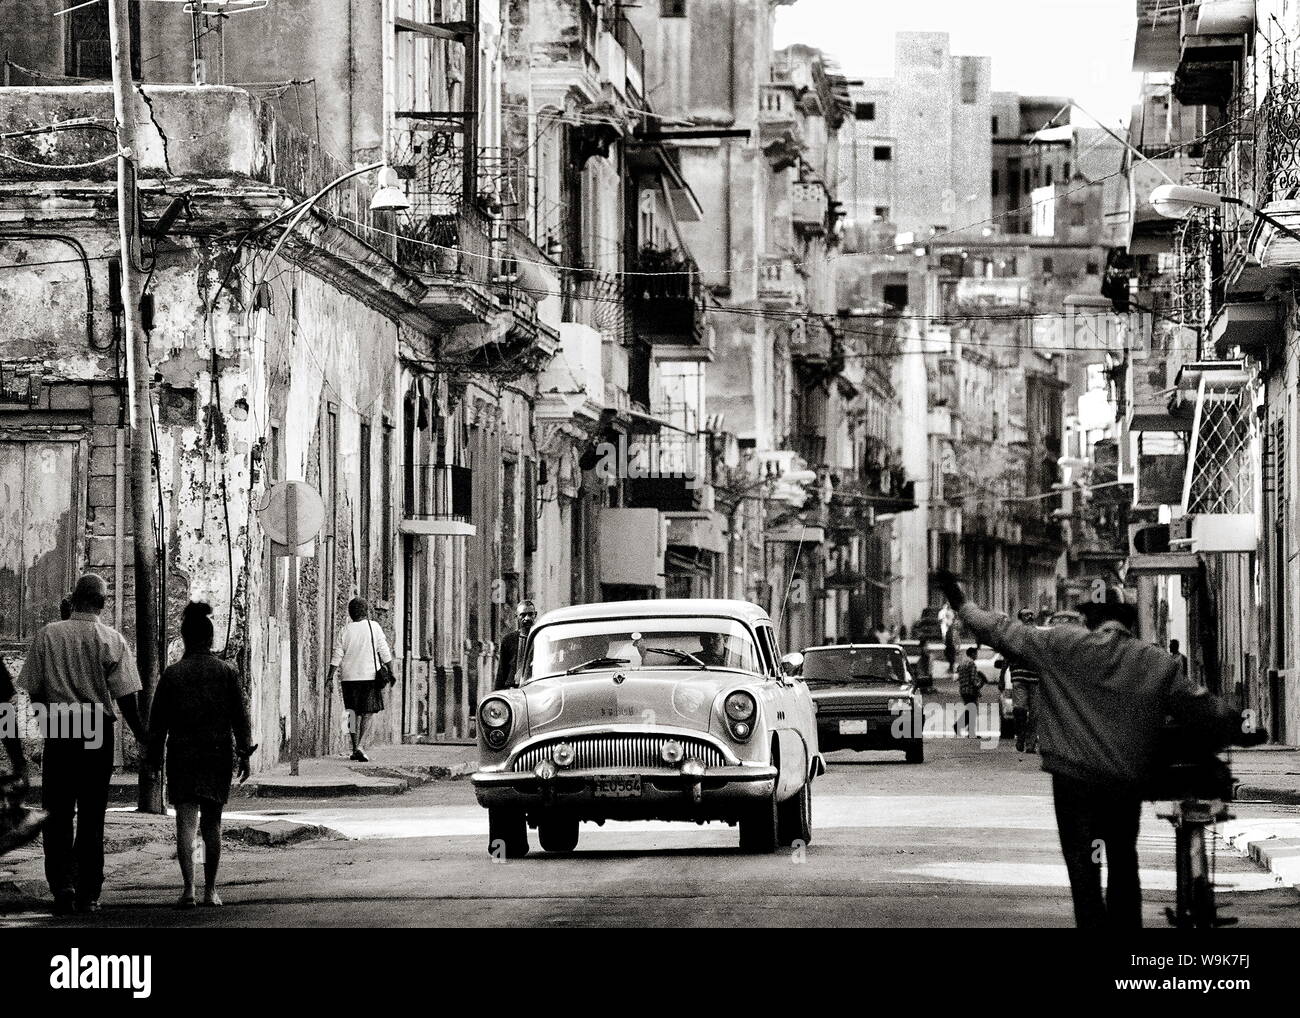 Strada trafficata che mostra edifici fatiscenti, vecchie automobili americane e della popolazione locale, Havana, Cuba, West Indies Foto Stock